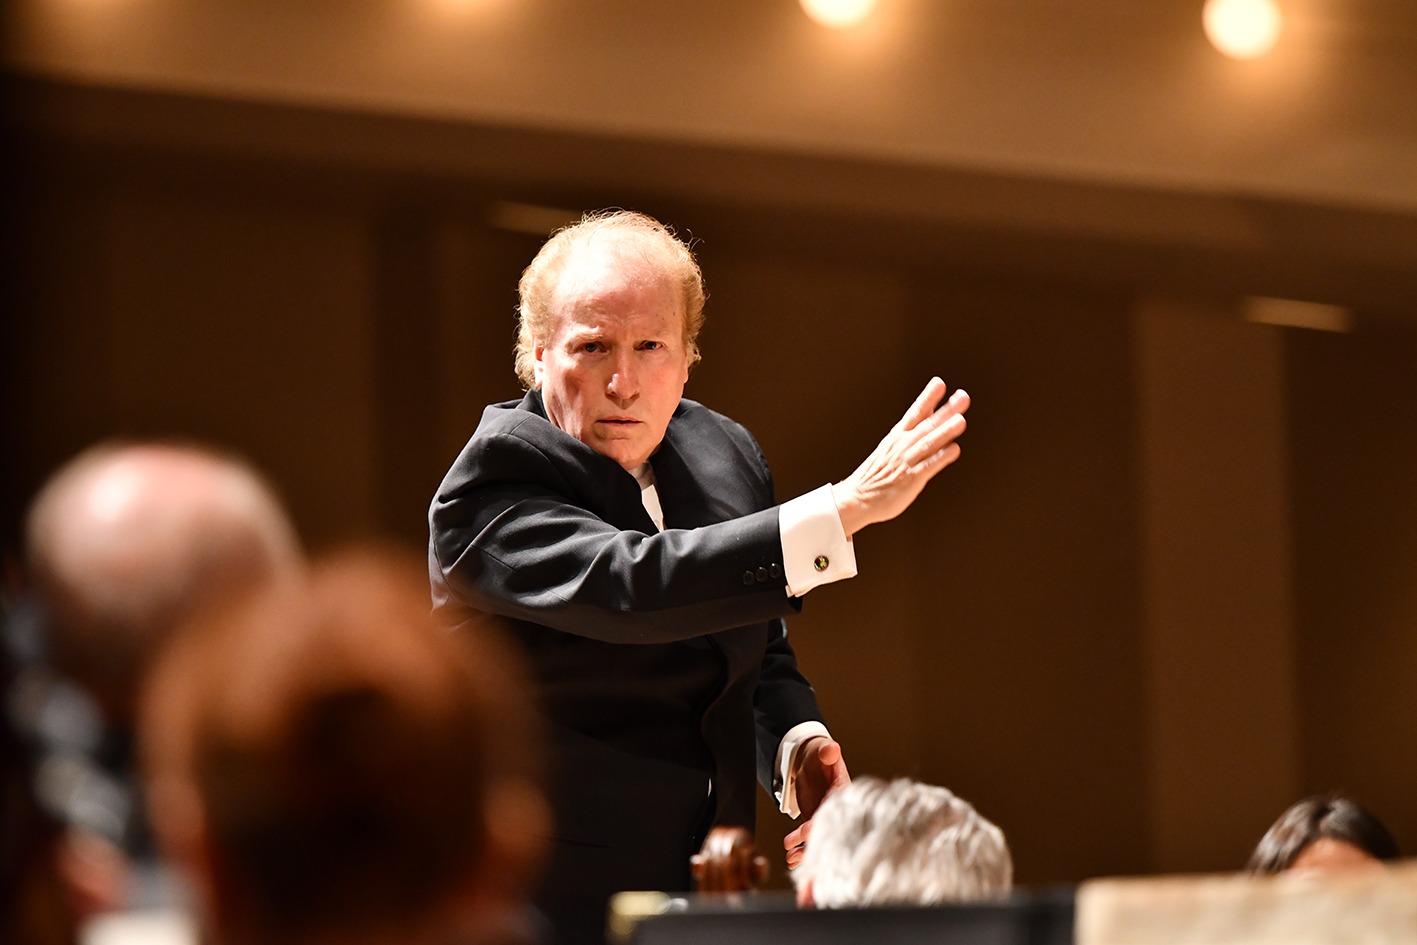 <p><strong>Con Arturo Diemecke, la Orquesta Sinfónica Nacional estrenará obras de Enrico Chapela y Hernández Cadengo</strong></p>
